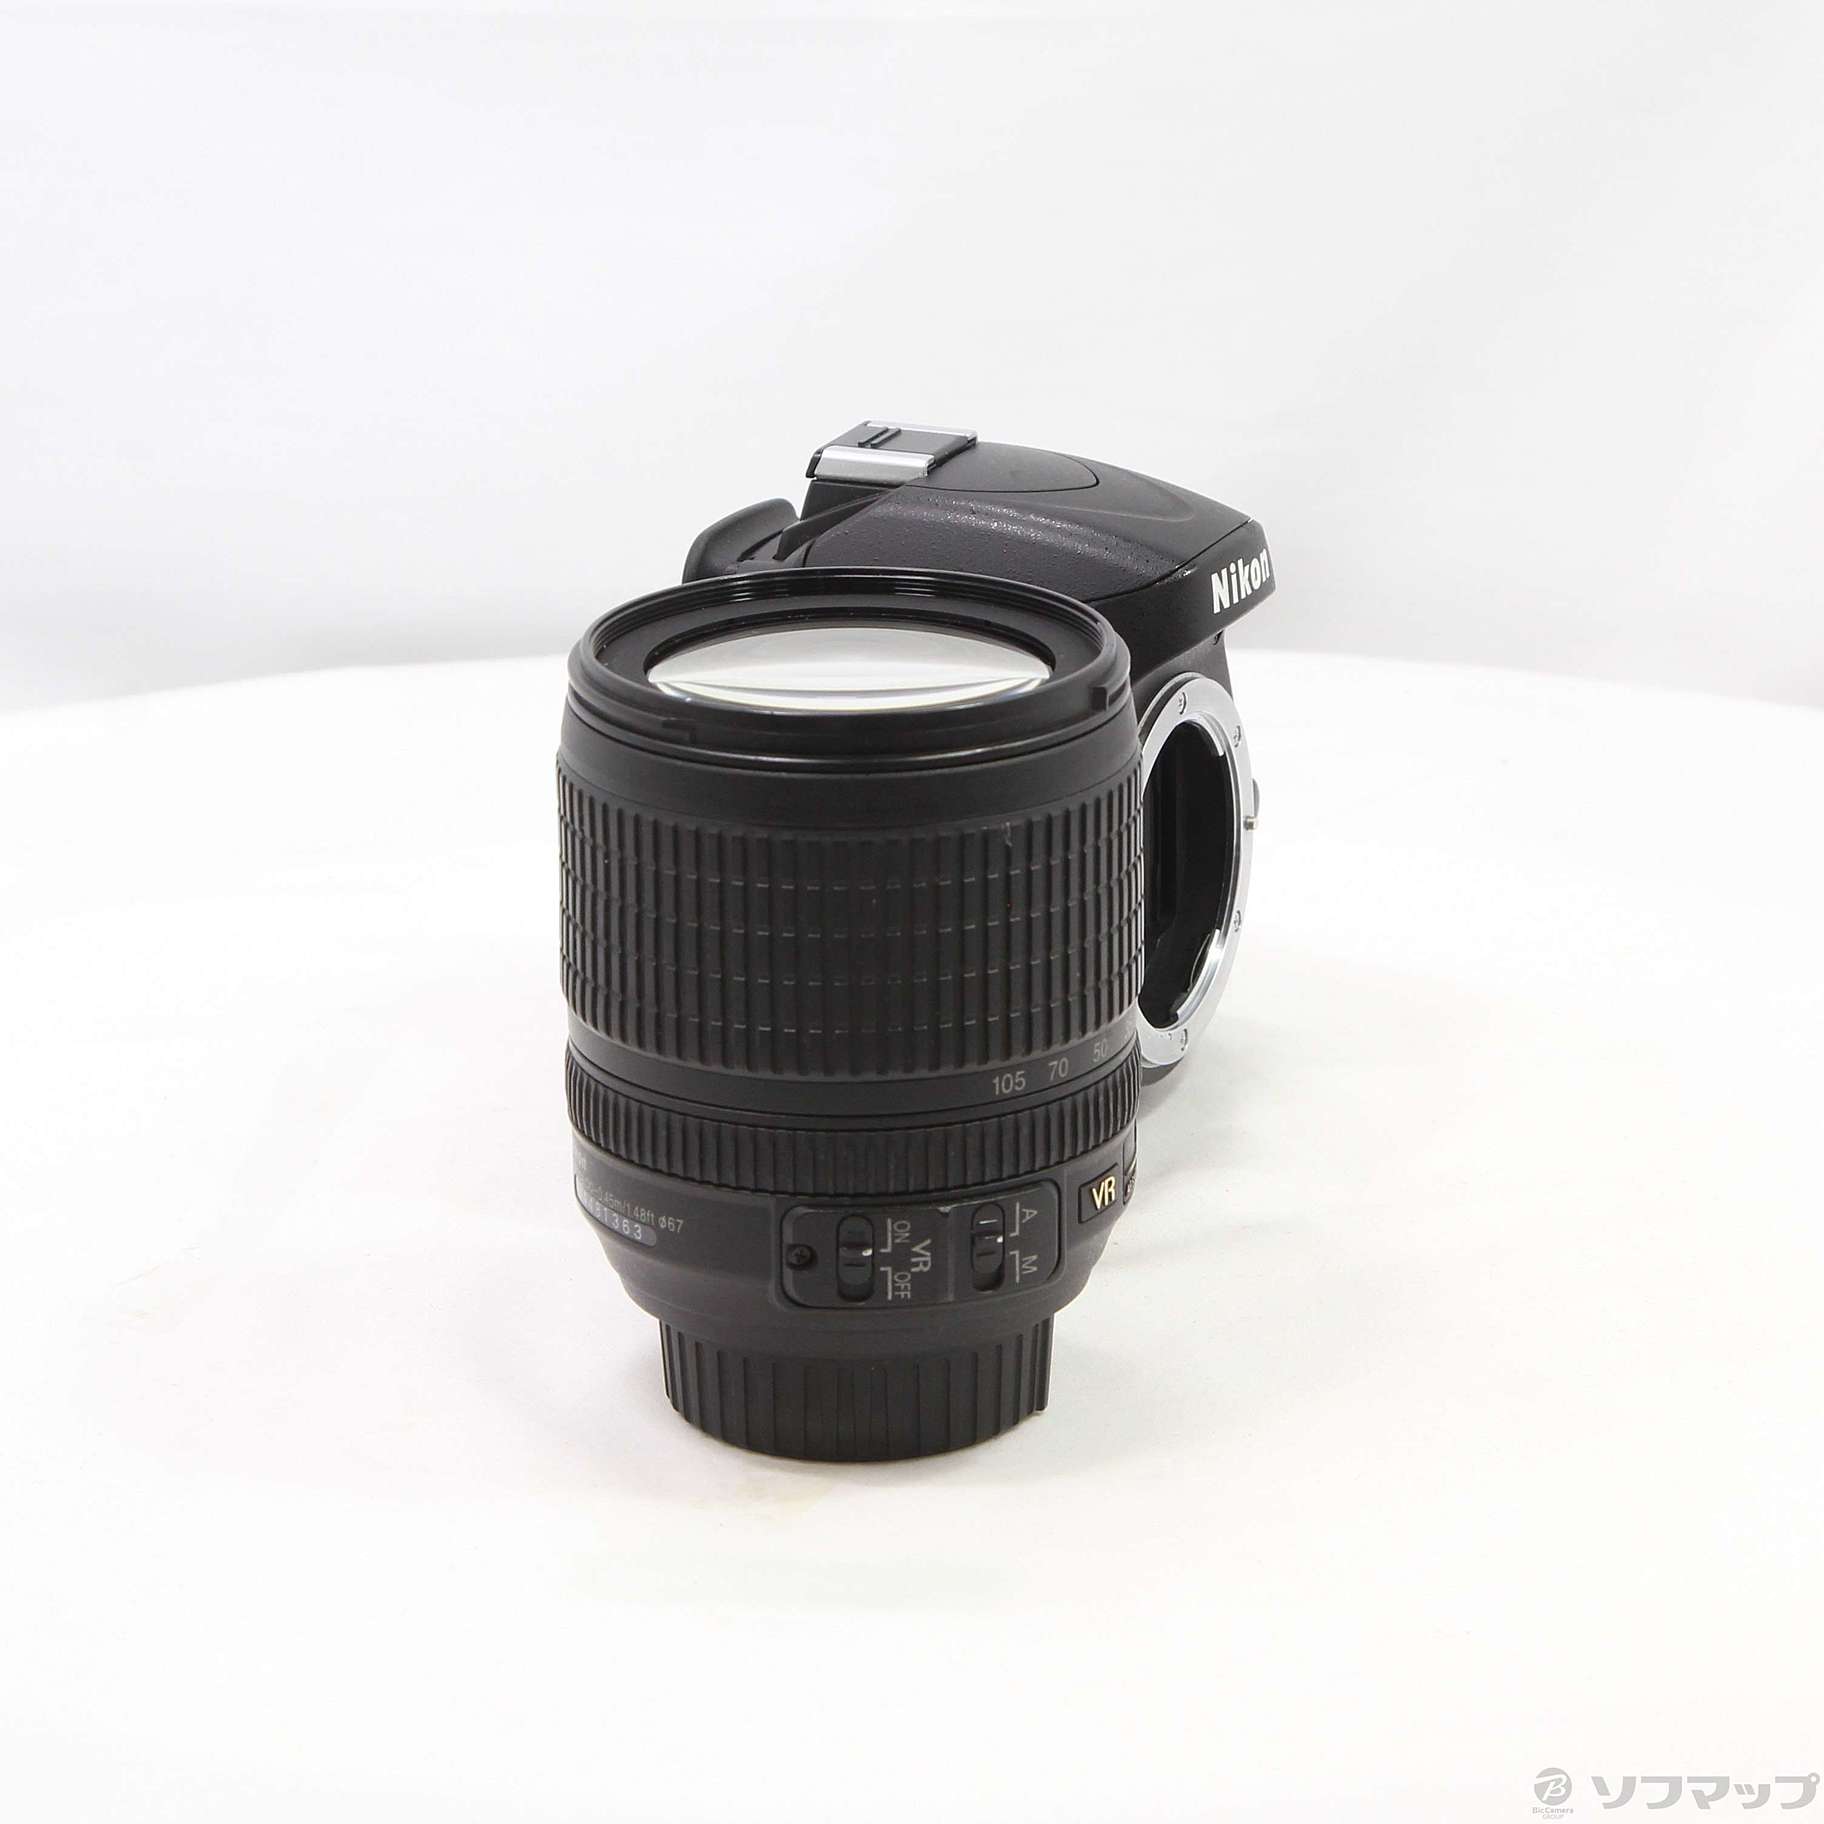 カメラニコンD5100 18-105mm f3.5-5.6VRレンズキット